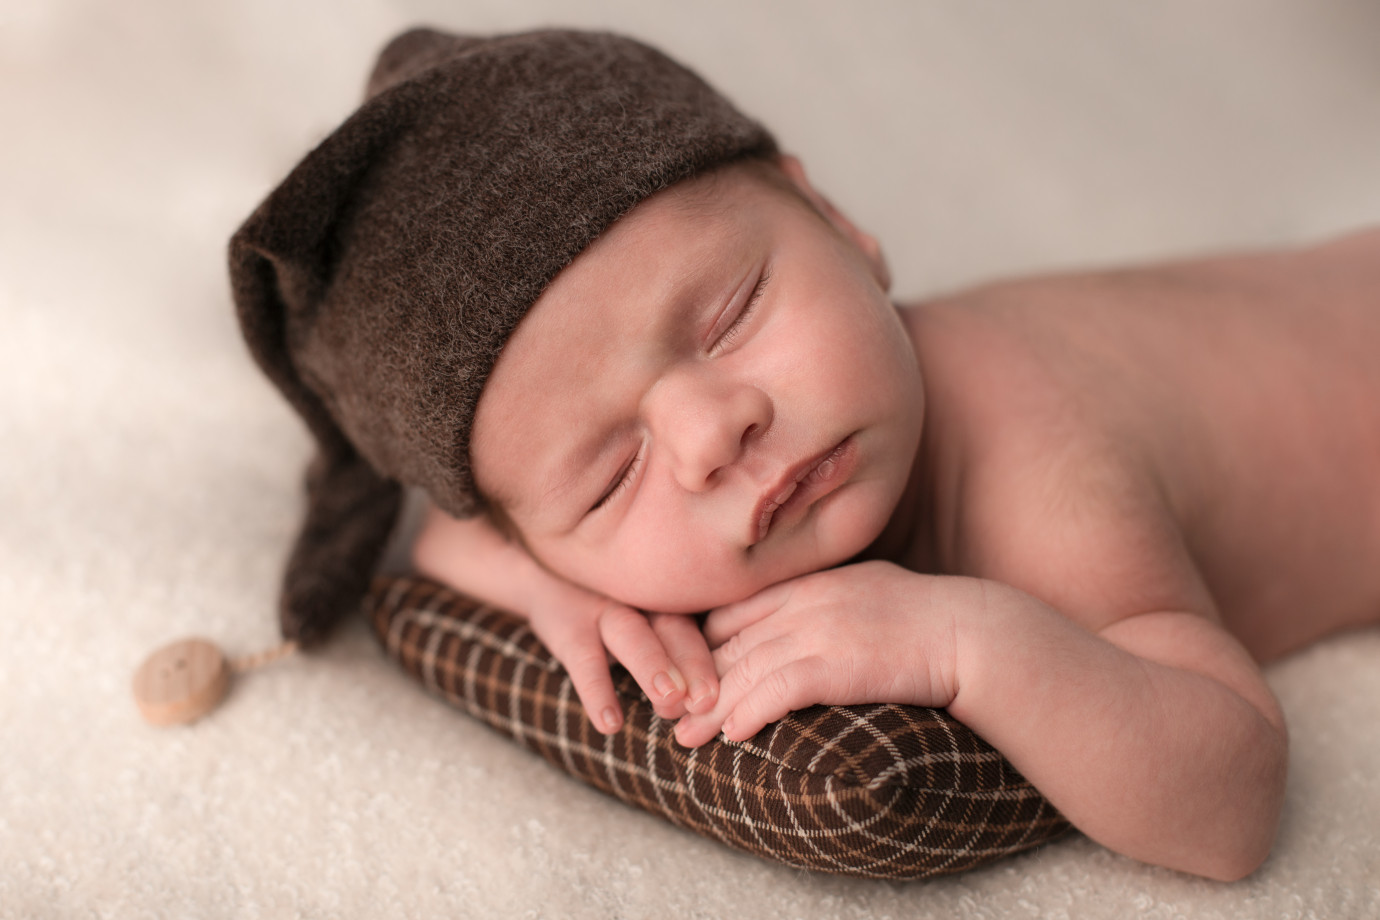 zdjęcia laka-prudnicka fotograf muarta portfolio zdjecia noworodkow sesje noworodkowe niemowlę